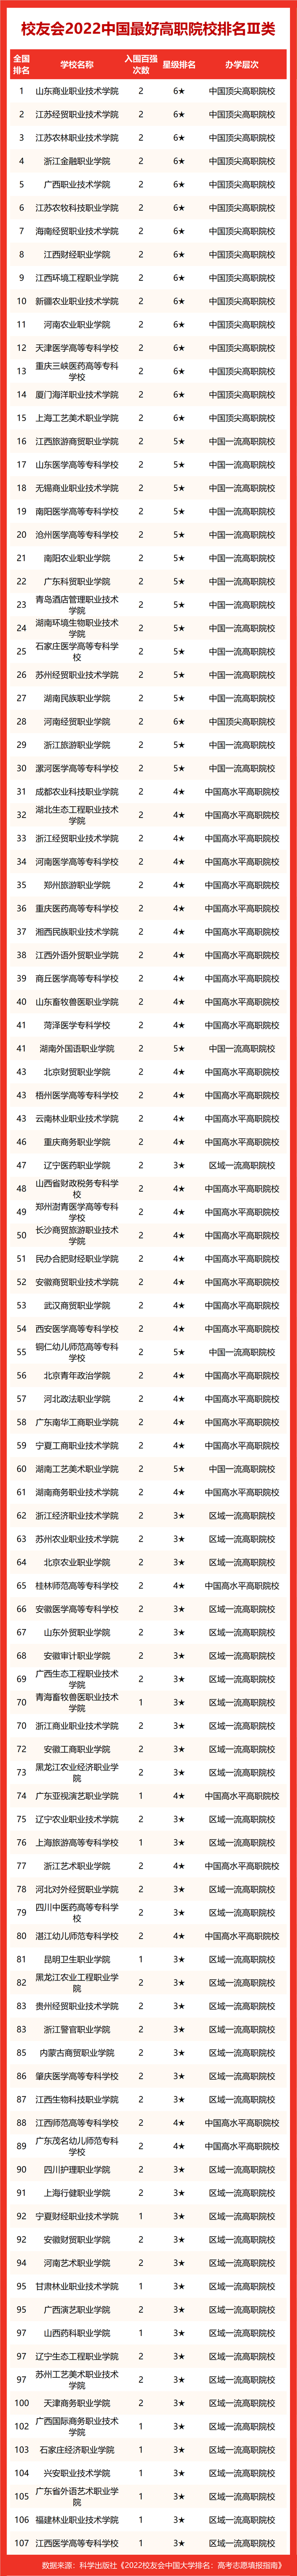 2022中国各类型最好大学排名，中国科学院大学等雄居第一